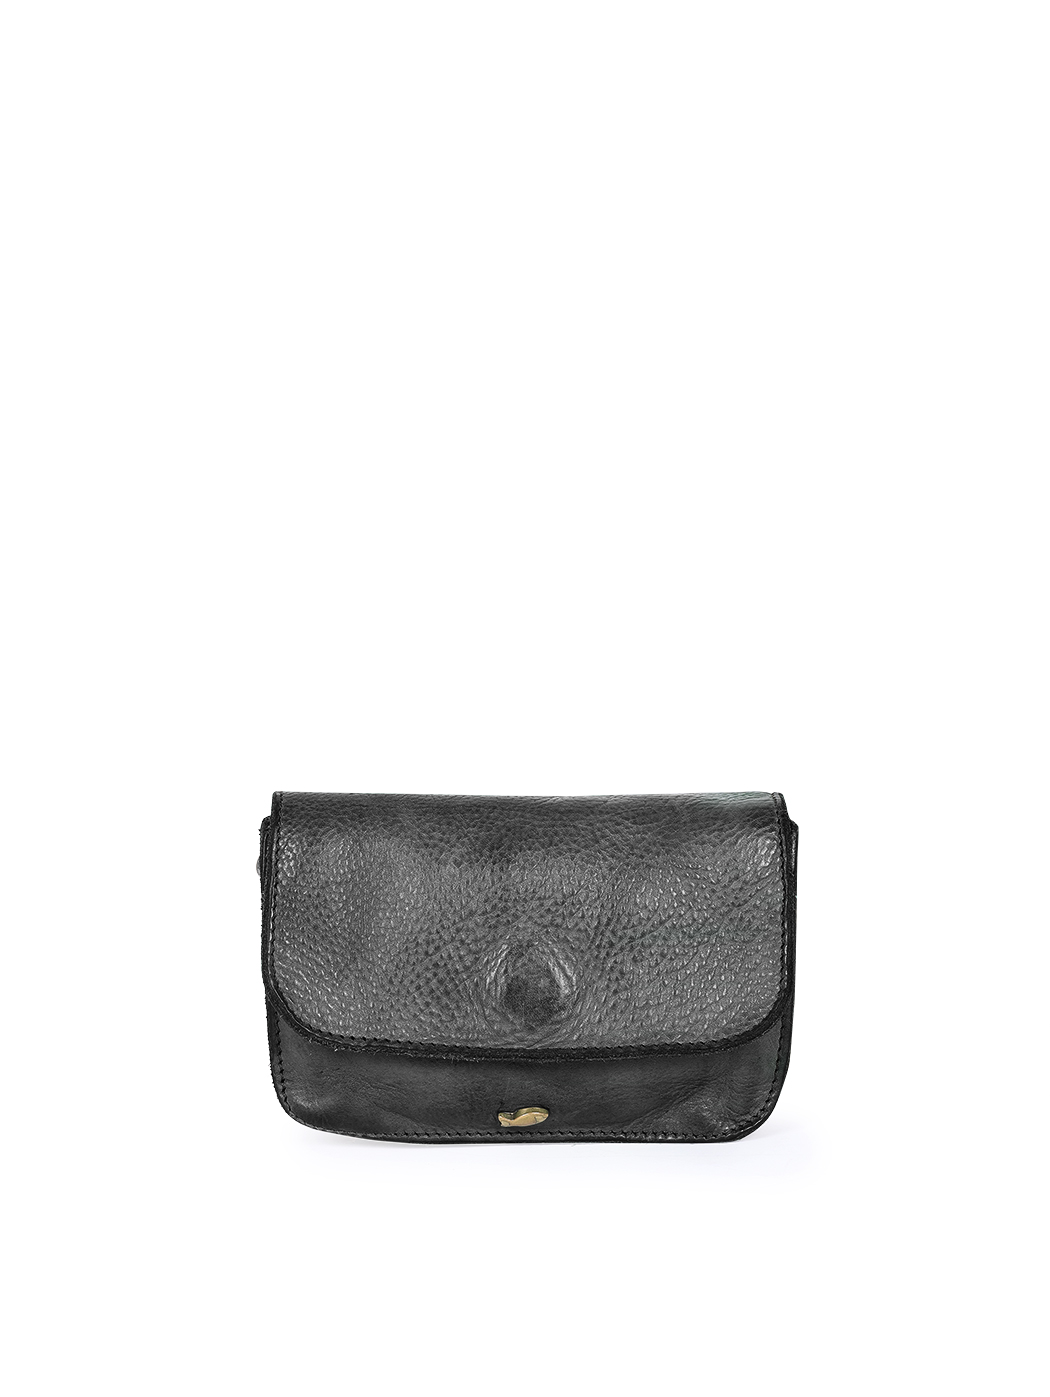 .Женская миниатюрная сумочка черного цвета